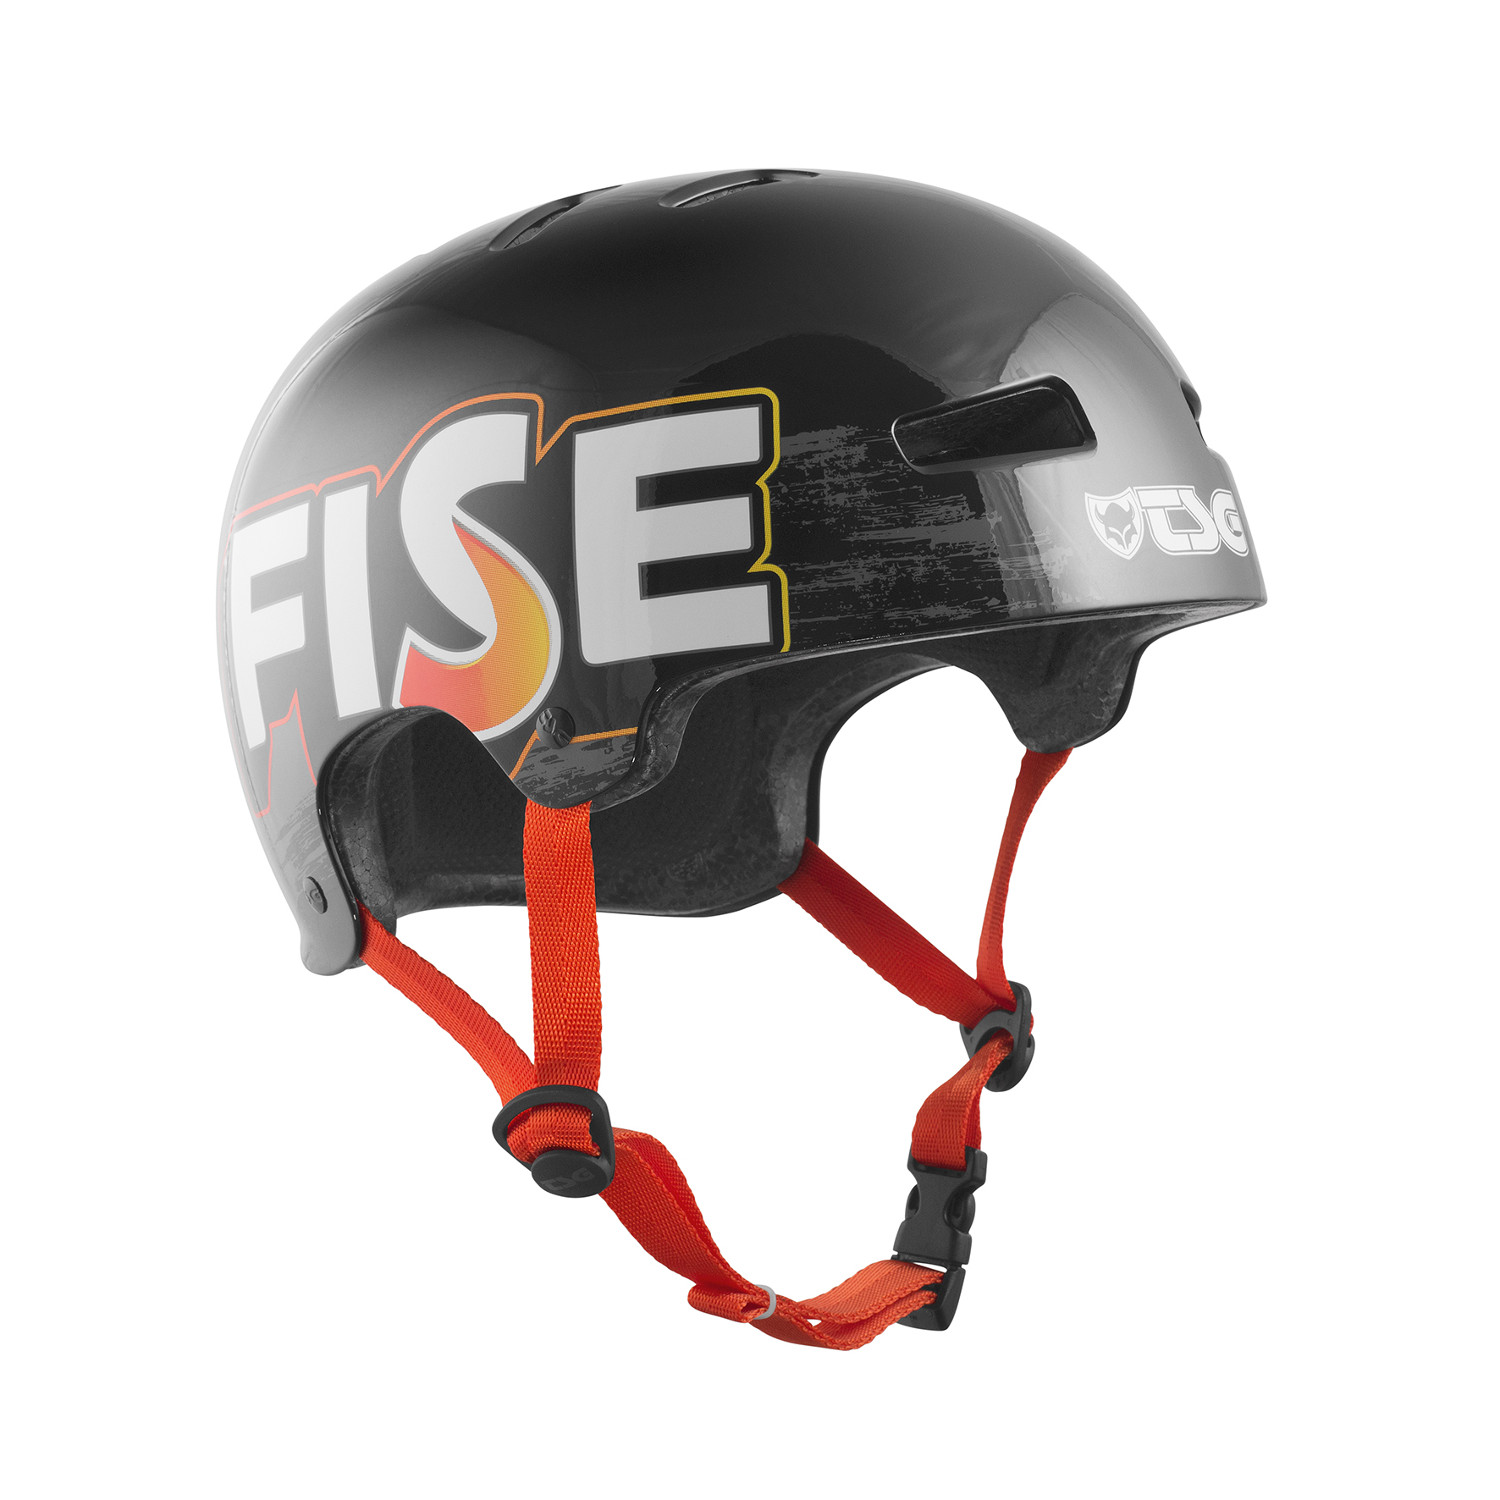 TSG Casque BMX/Dirt Evolution Company Design - FISE